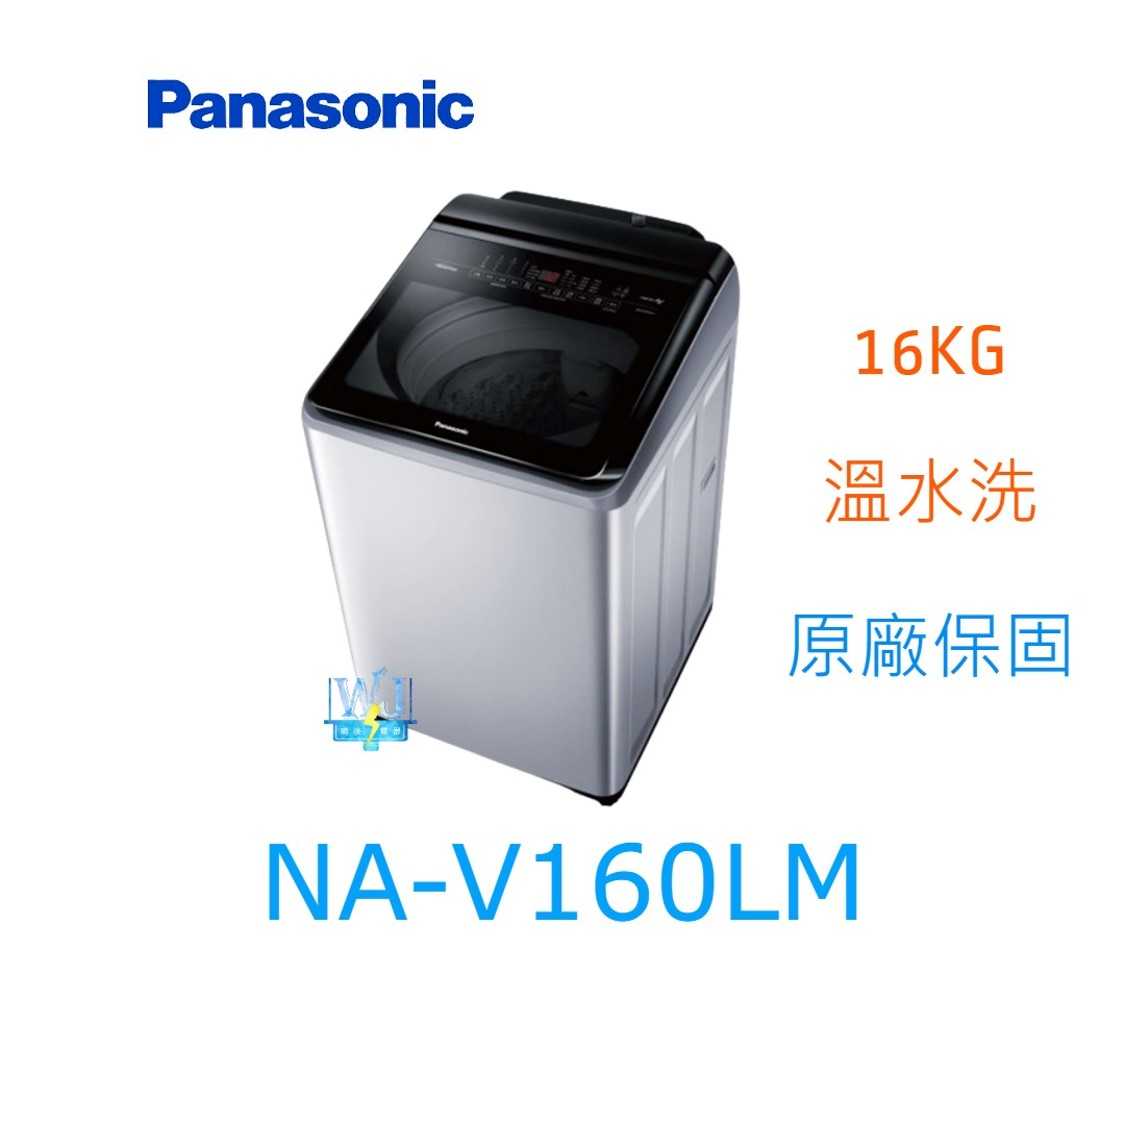 ☆可議價【暐竣電器】Panasonic 國際牌 NA-V160LM 直立式洗衣機 NAV160LM 溫水洗變頻洗衣機